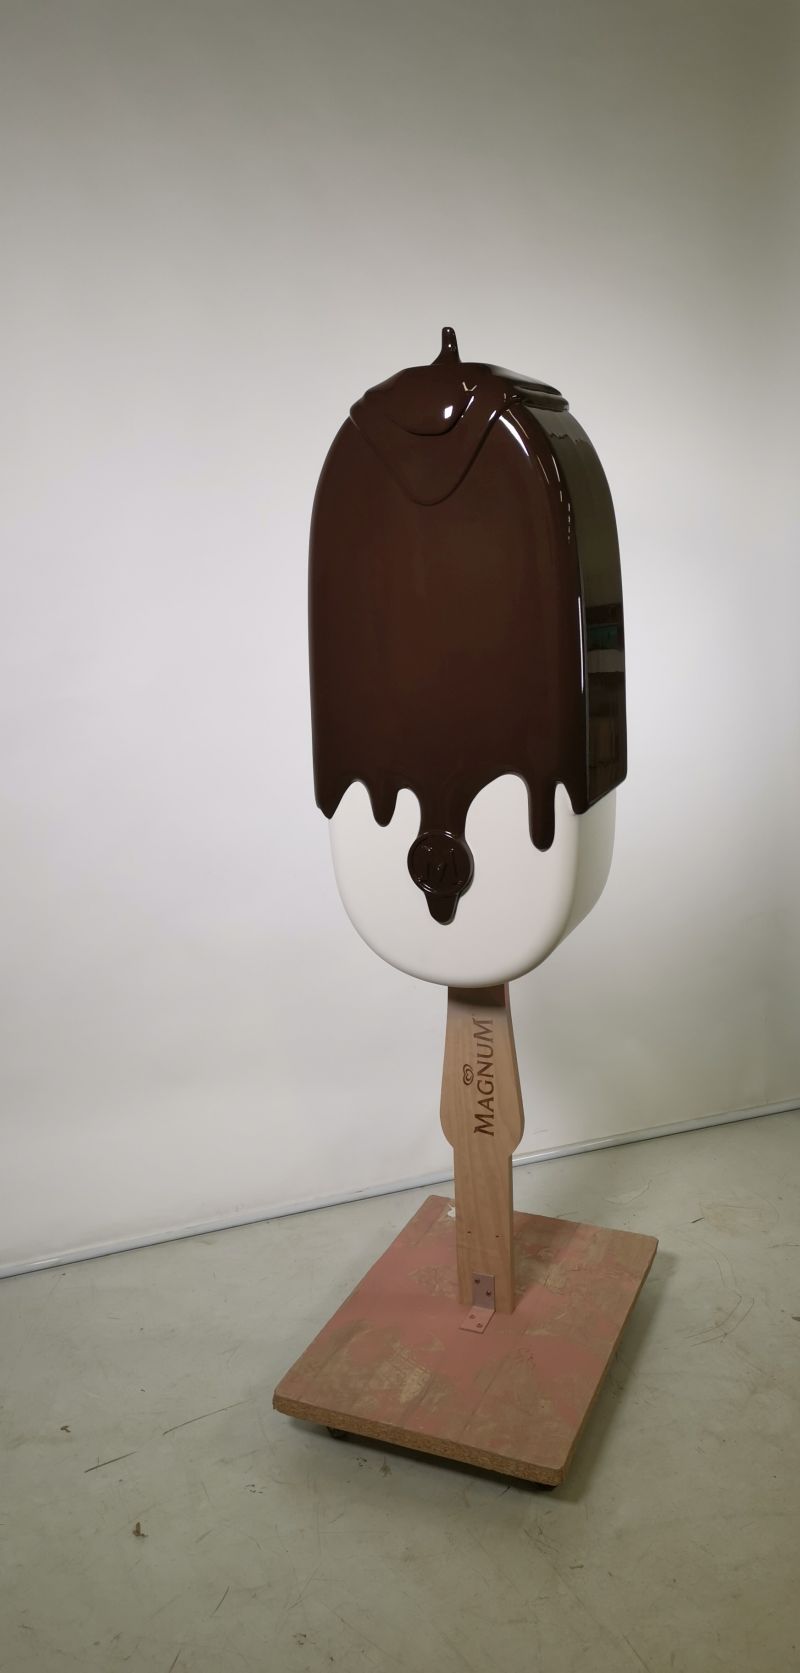 Reklamní předměty XL zmrzliny